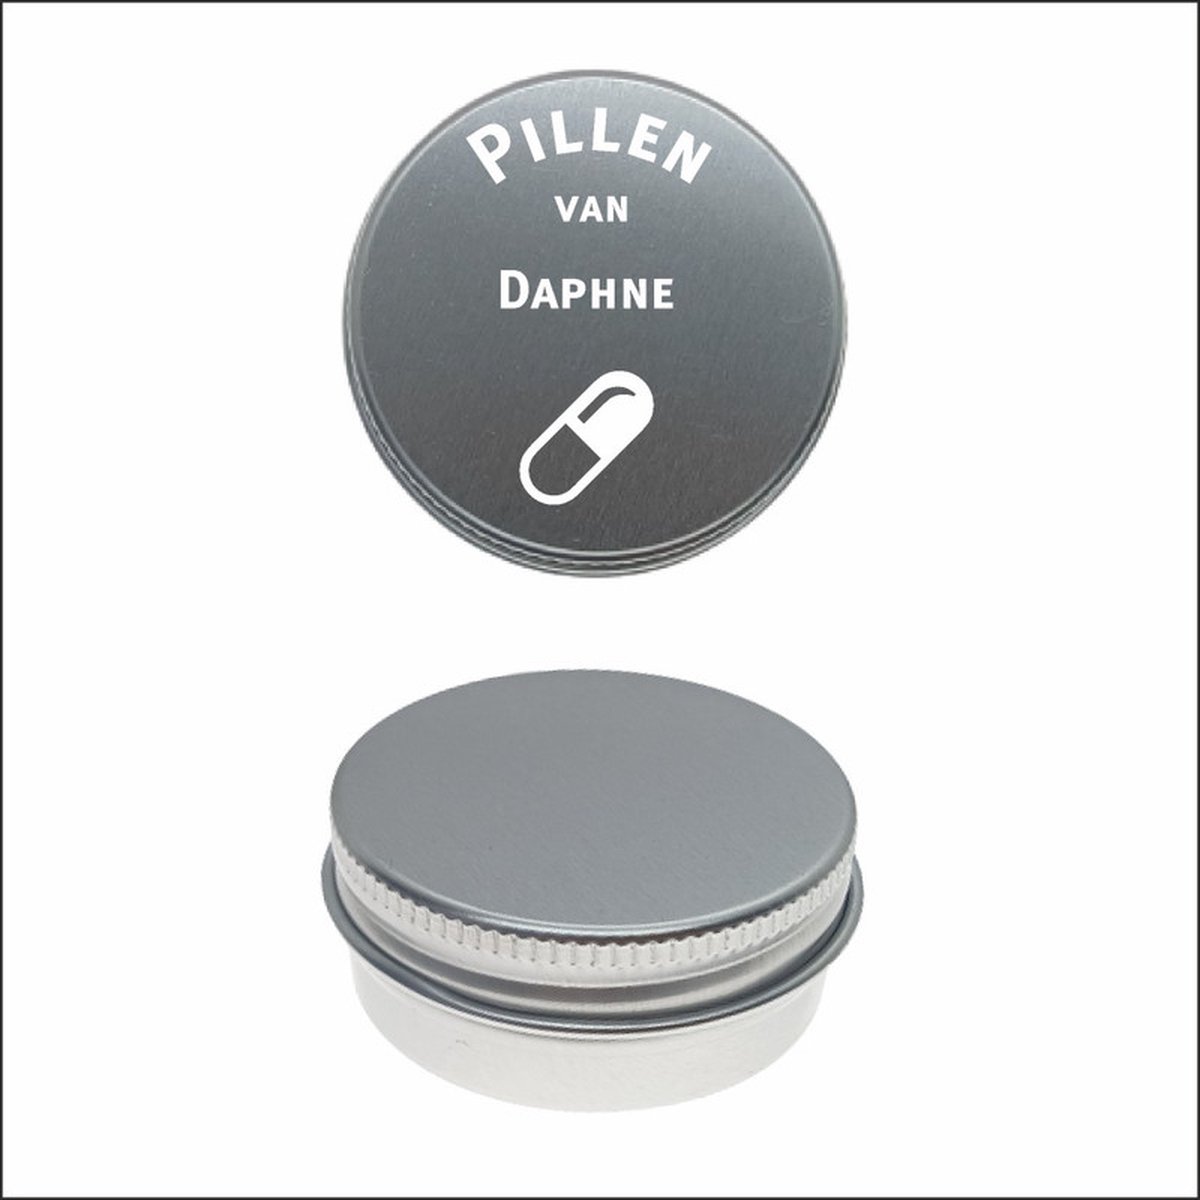 Pillen Blikje Met Naam Gravering - Daphne